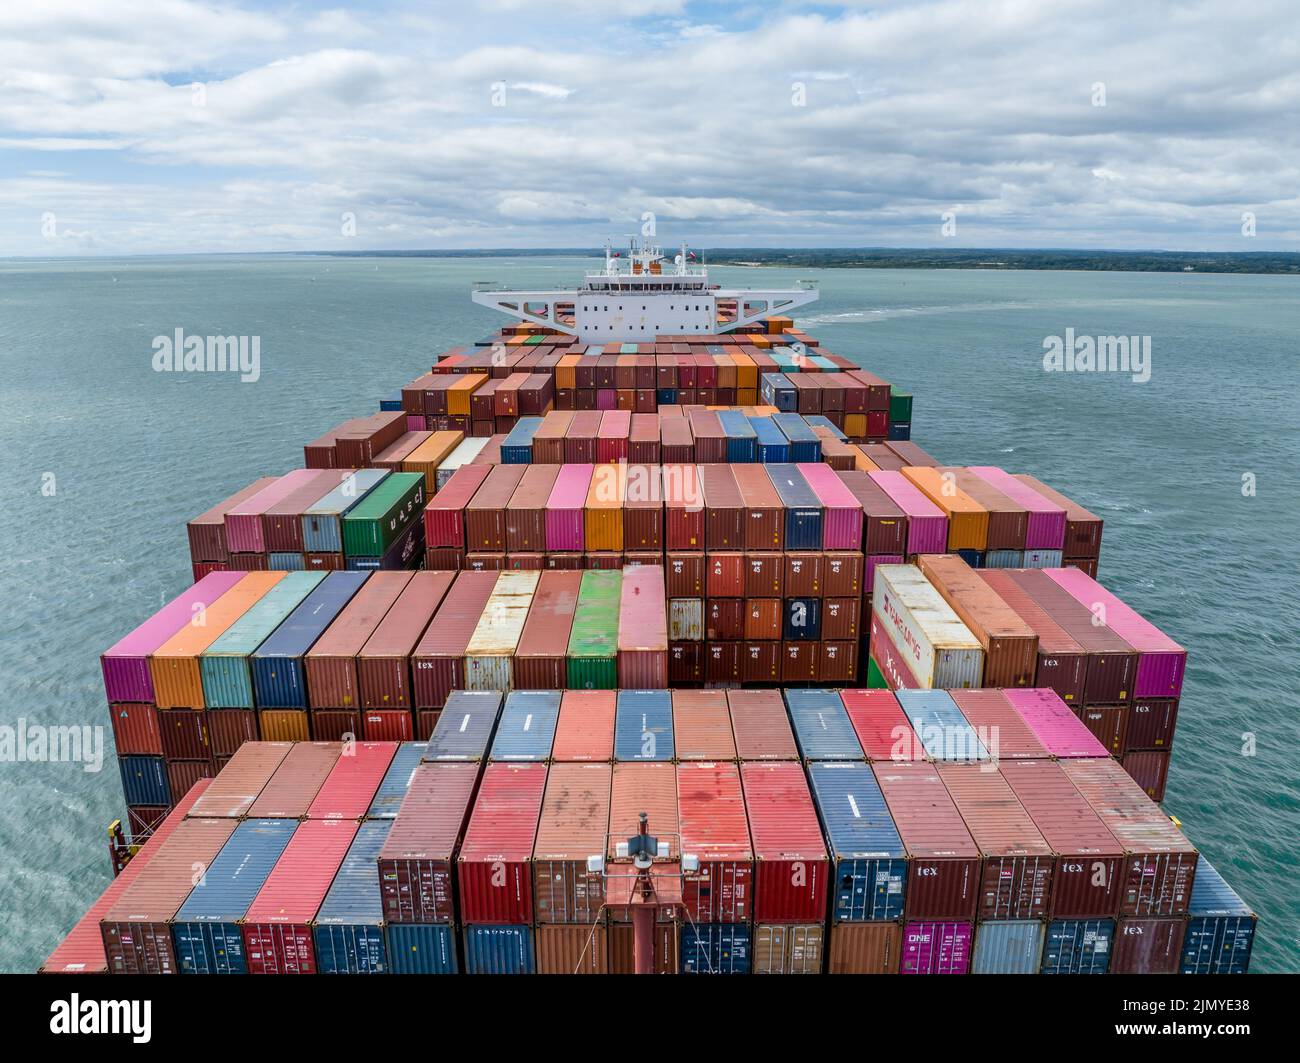 Enorme nave container in mare che trasporta merci e merci ai porti internazionali Foto Stock